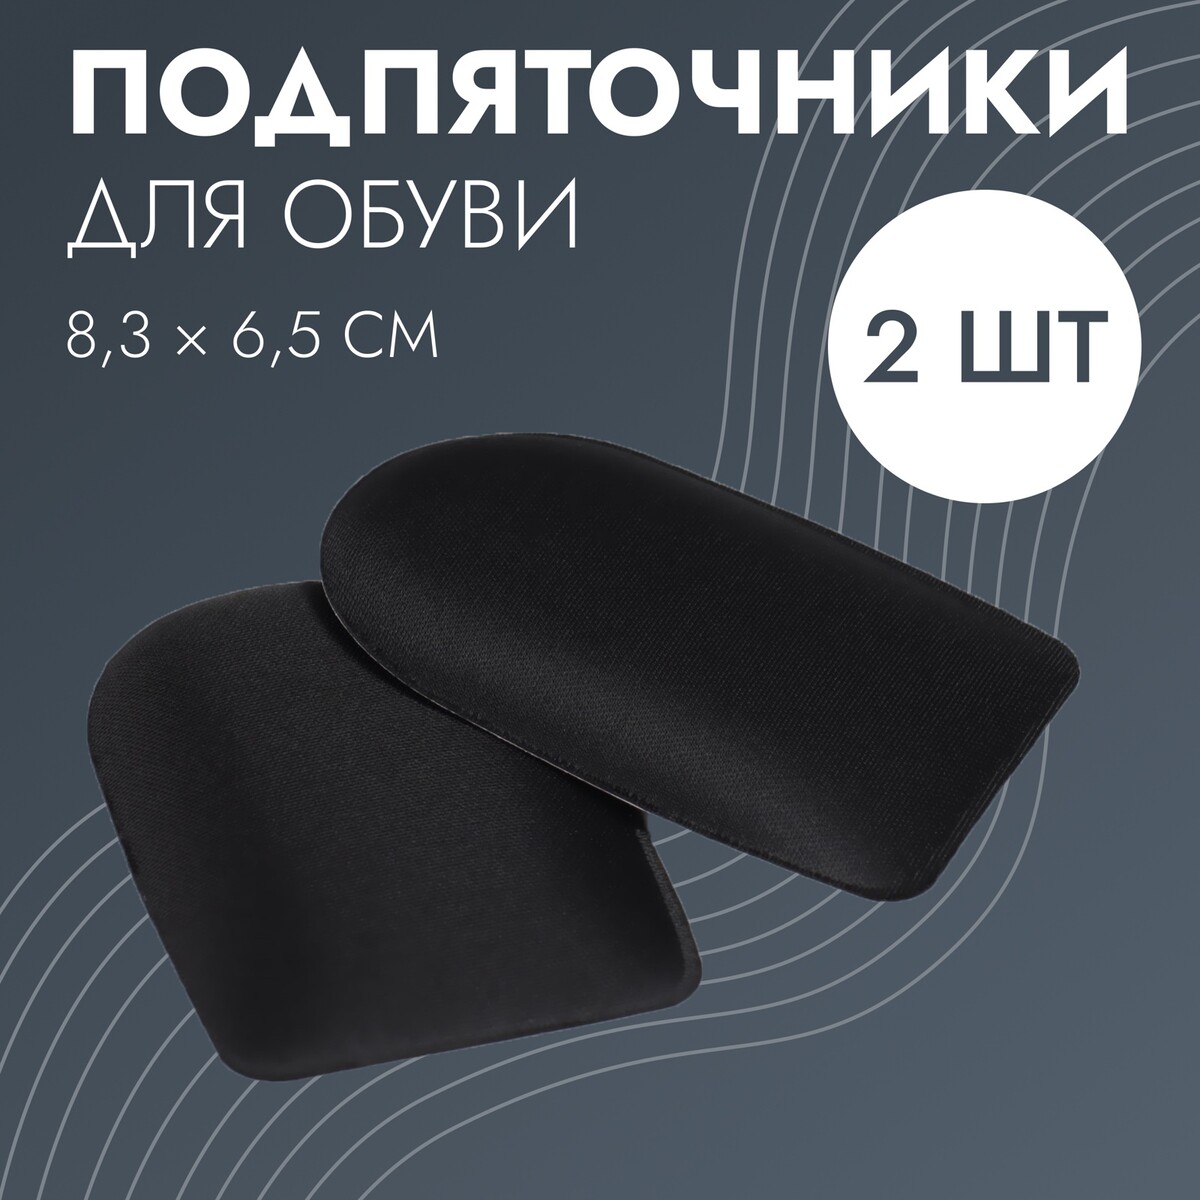 Подпяточники для обуви, клеевая основа, 8 × 6 см, пара, цвет черный